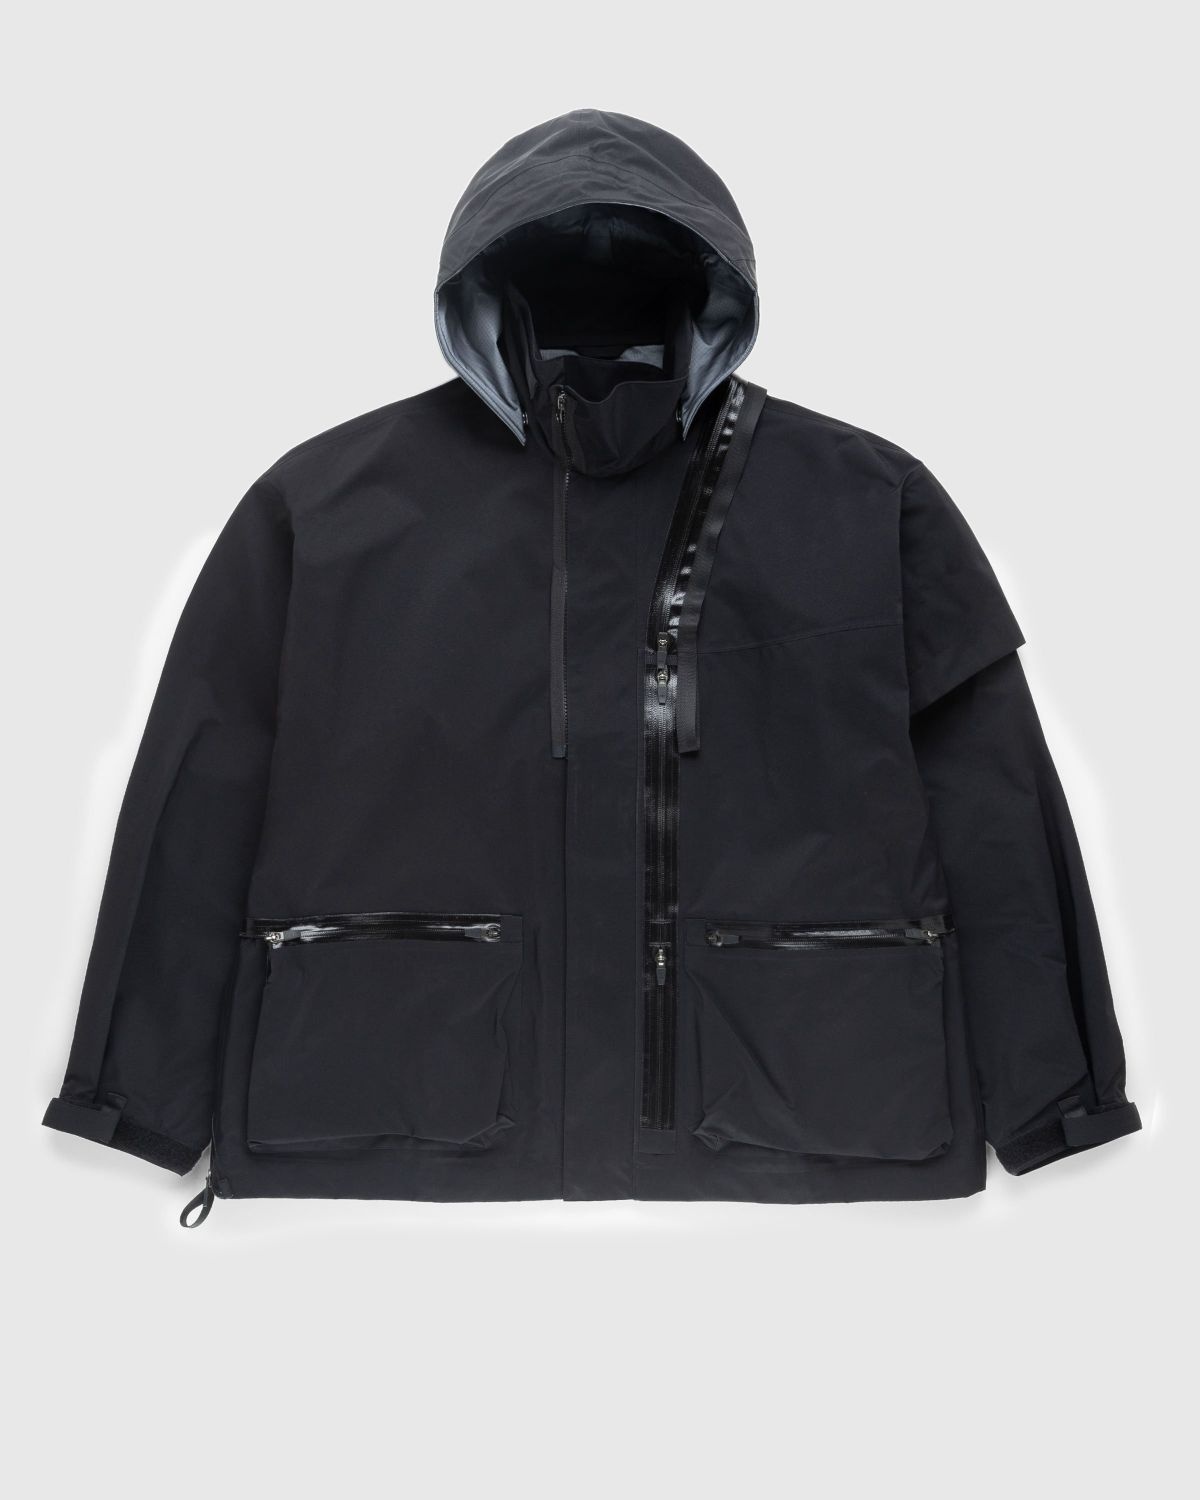 ACRONYM ACRONYM – J115-GT Jacket Black, highsnobiety